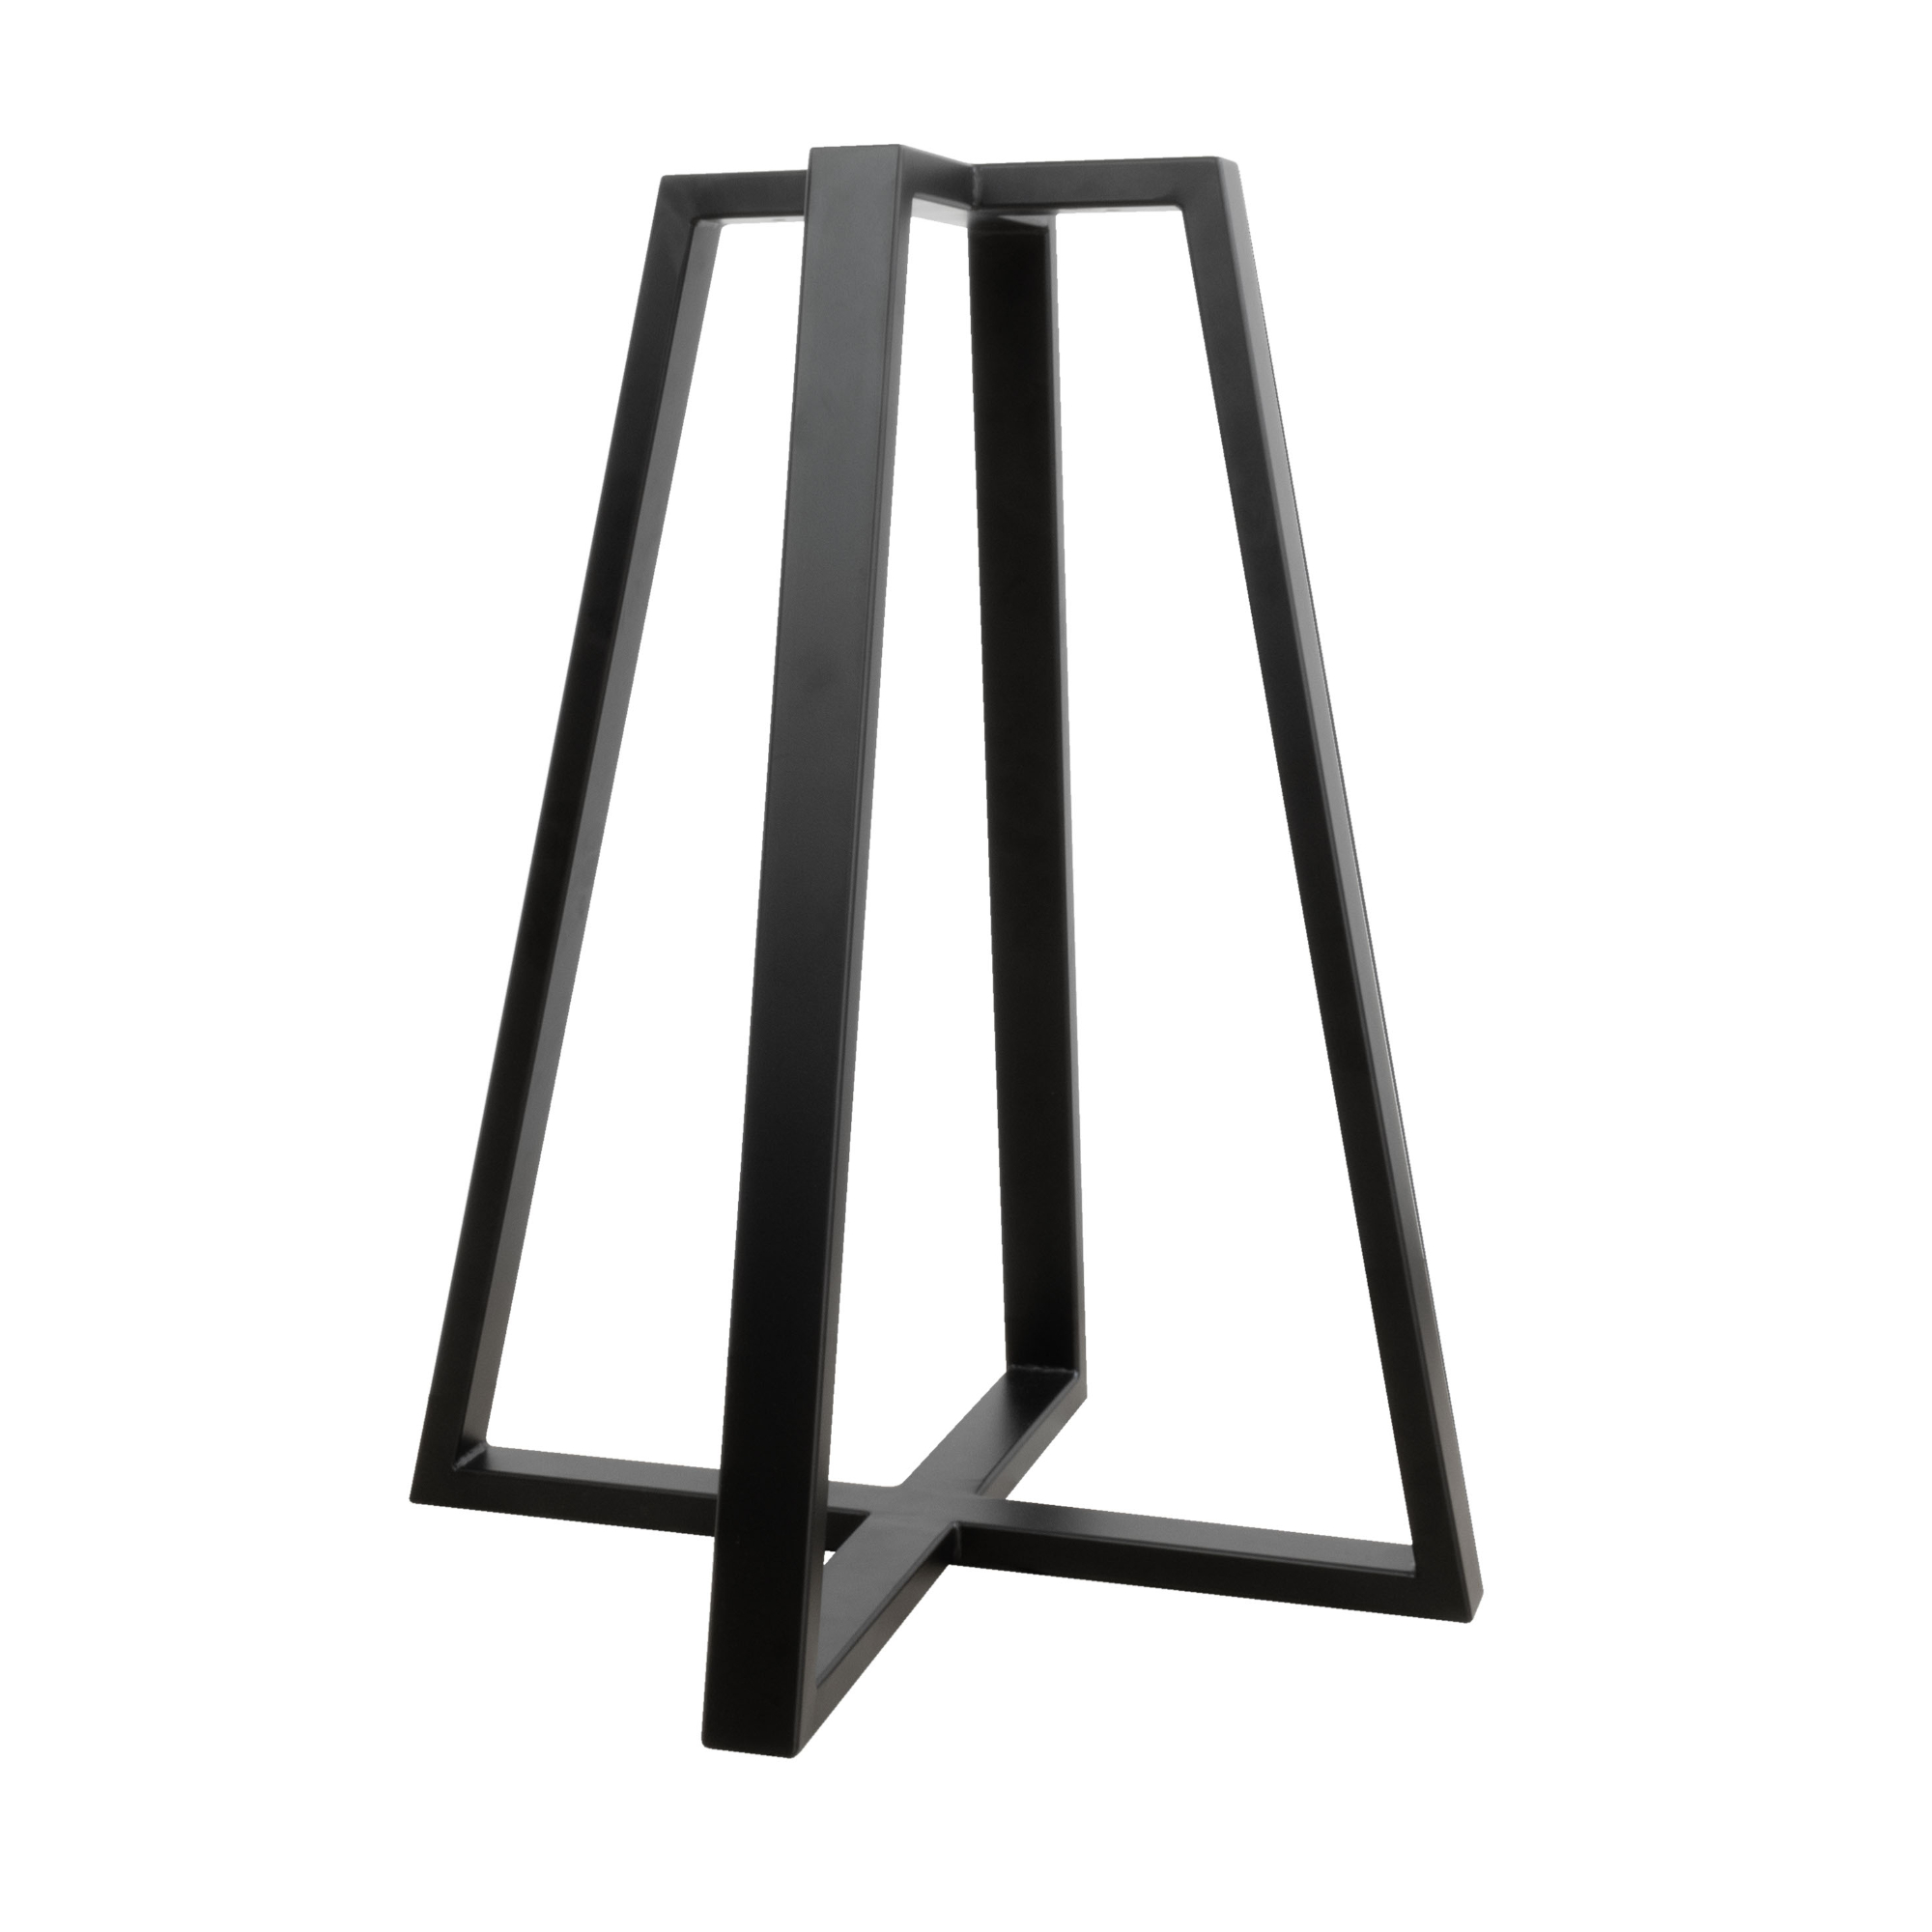 Table frame pyramid